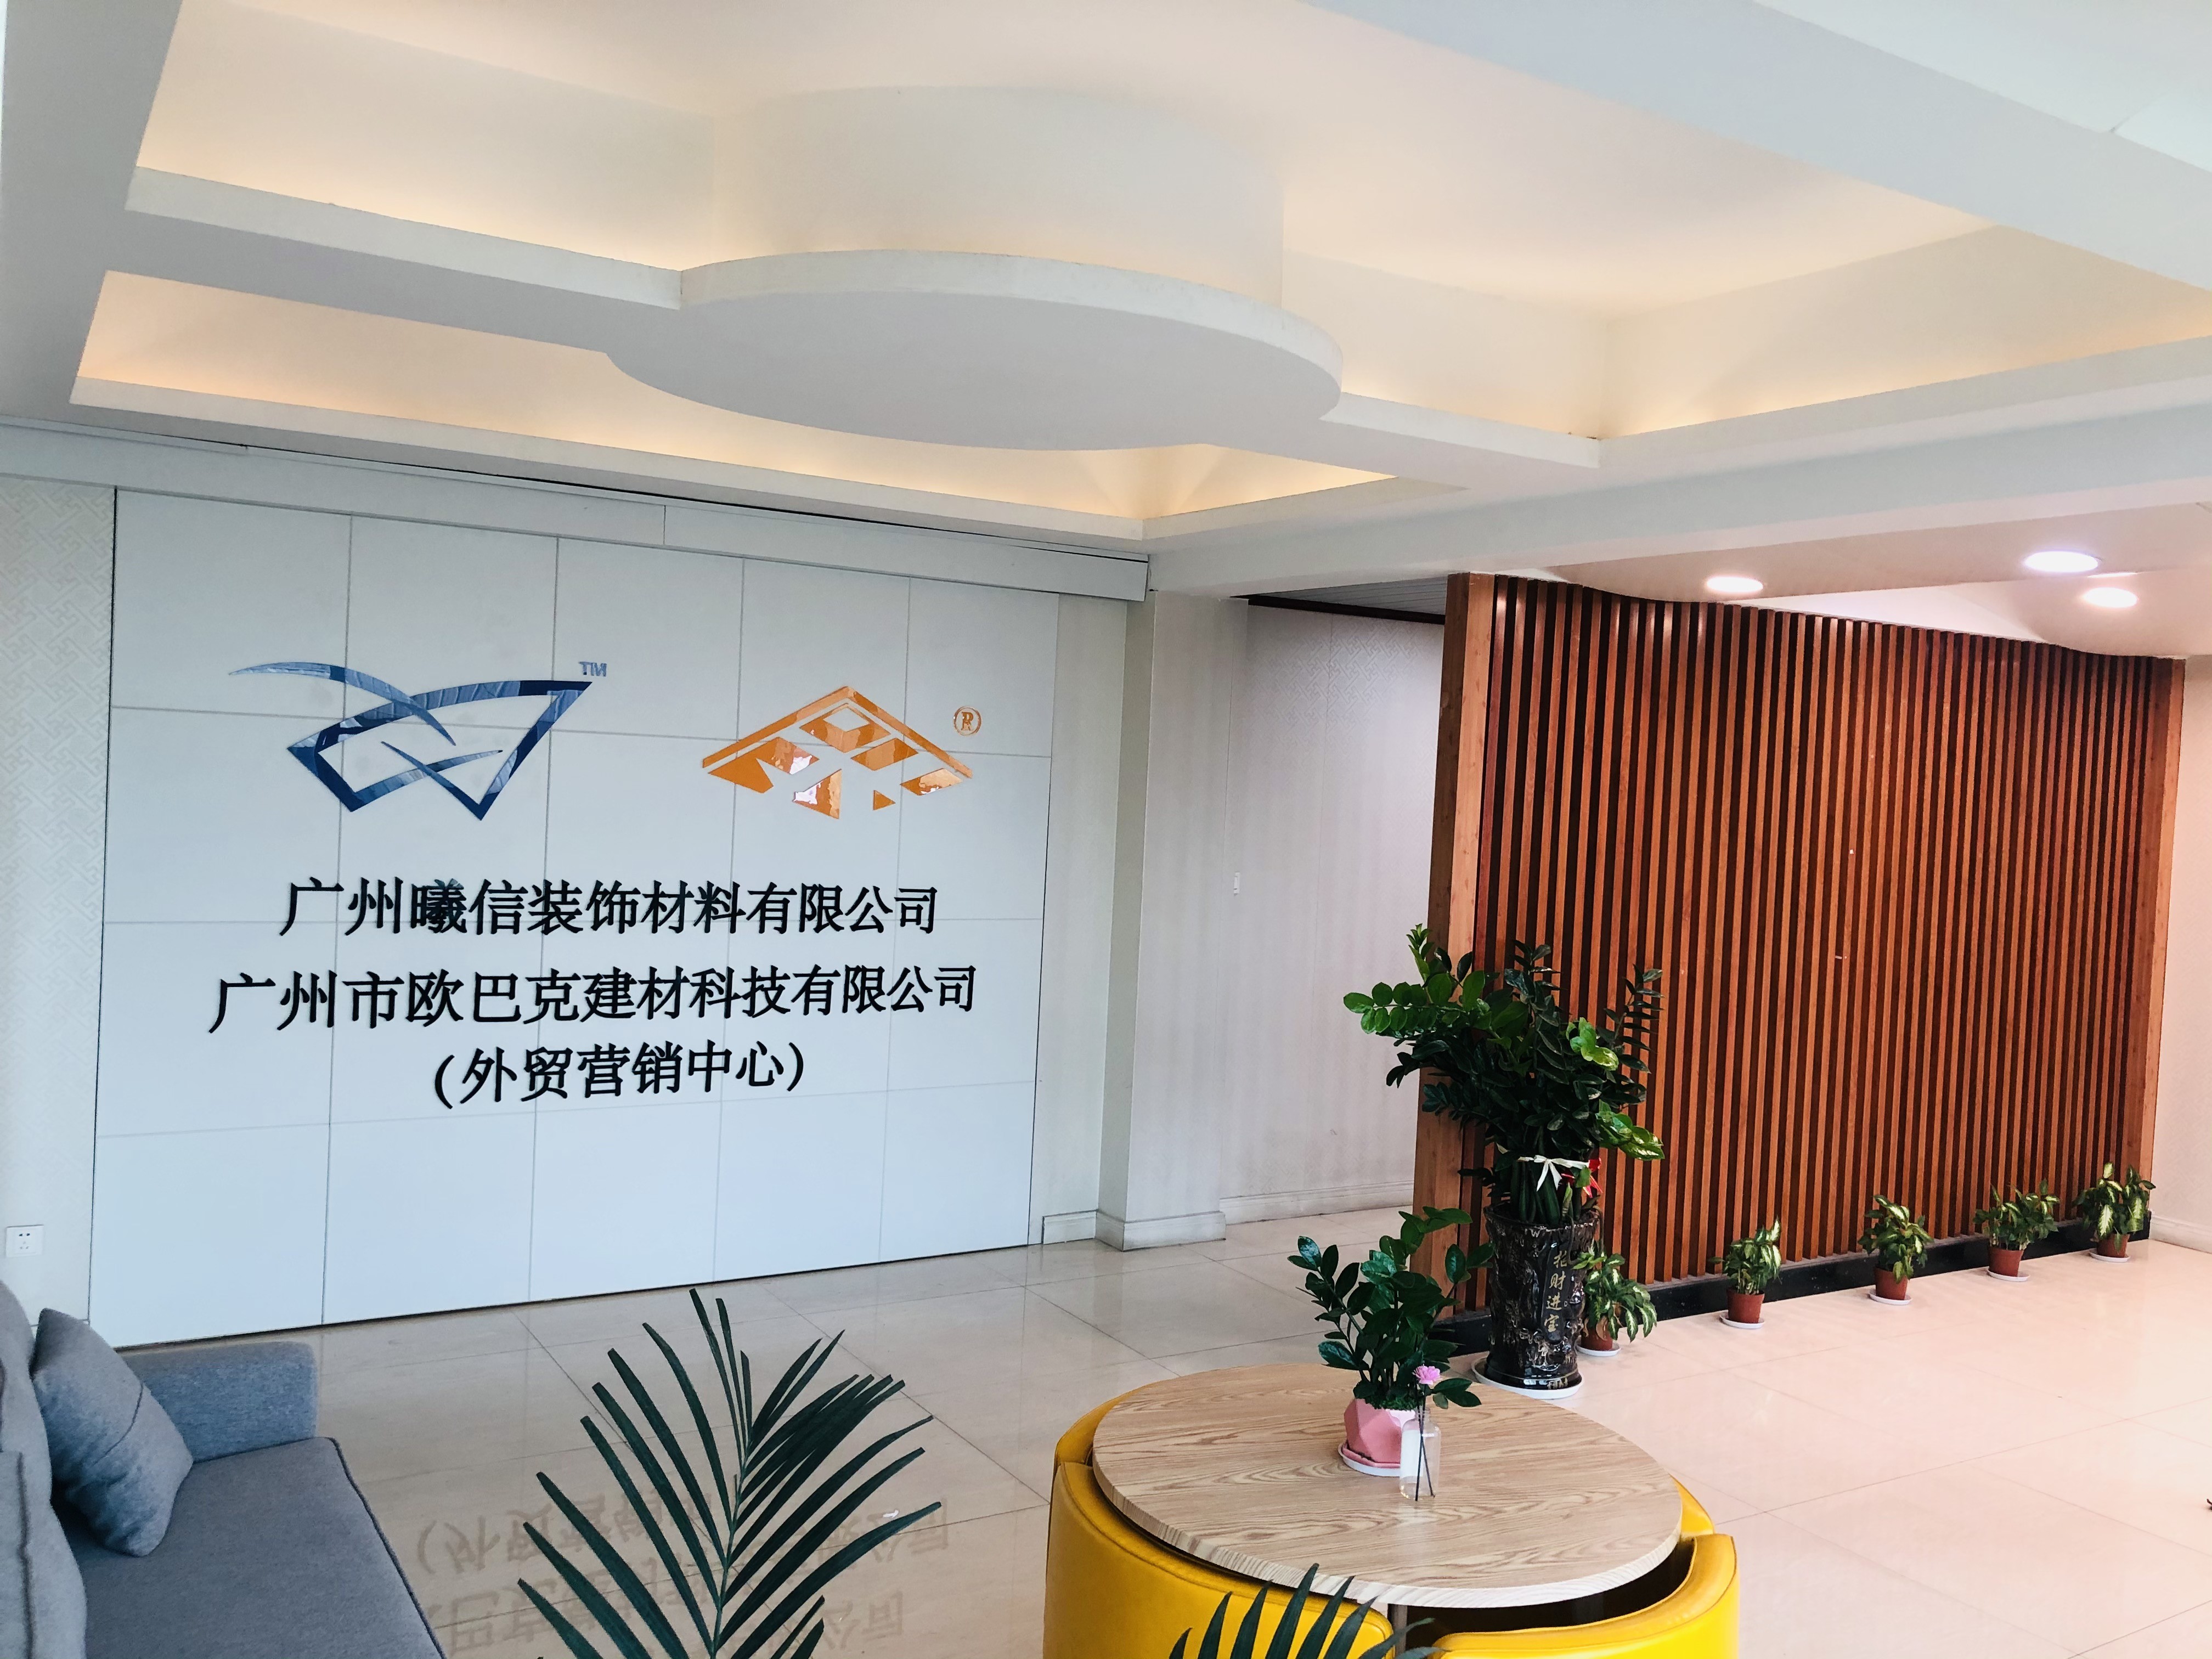 Trung Quốc Guangzhou Season Decoration Materials Co., Ltd. hồ sơ công ty